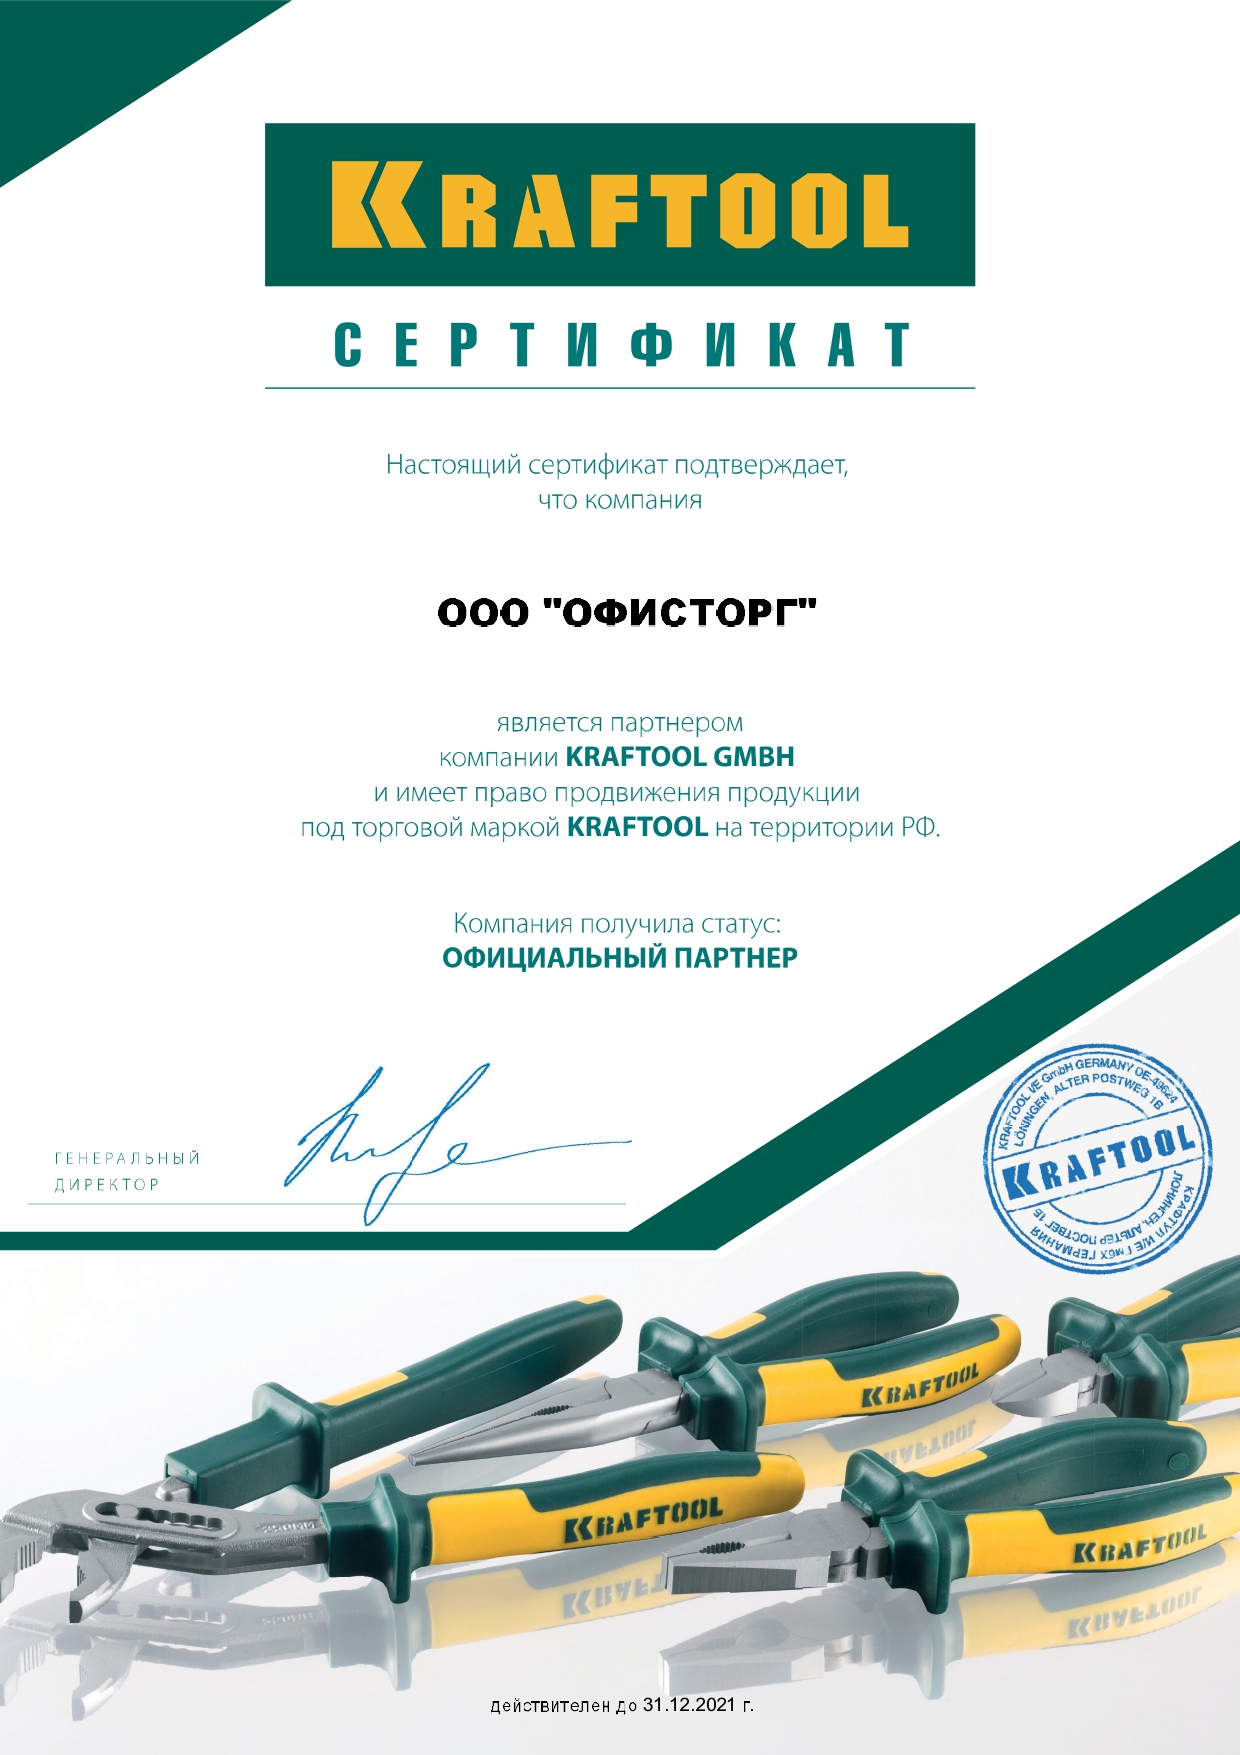 Сертификат Kraftool